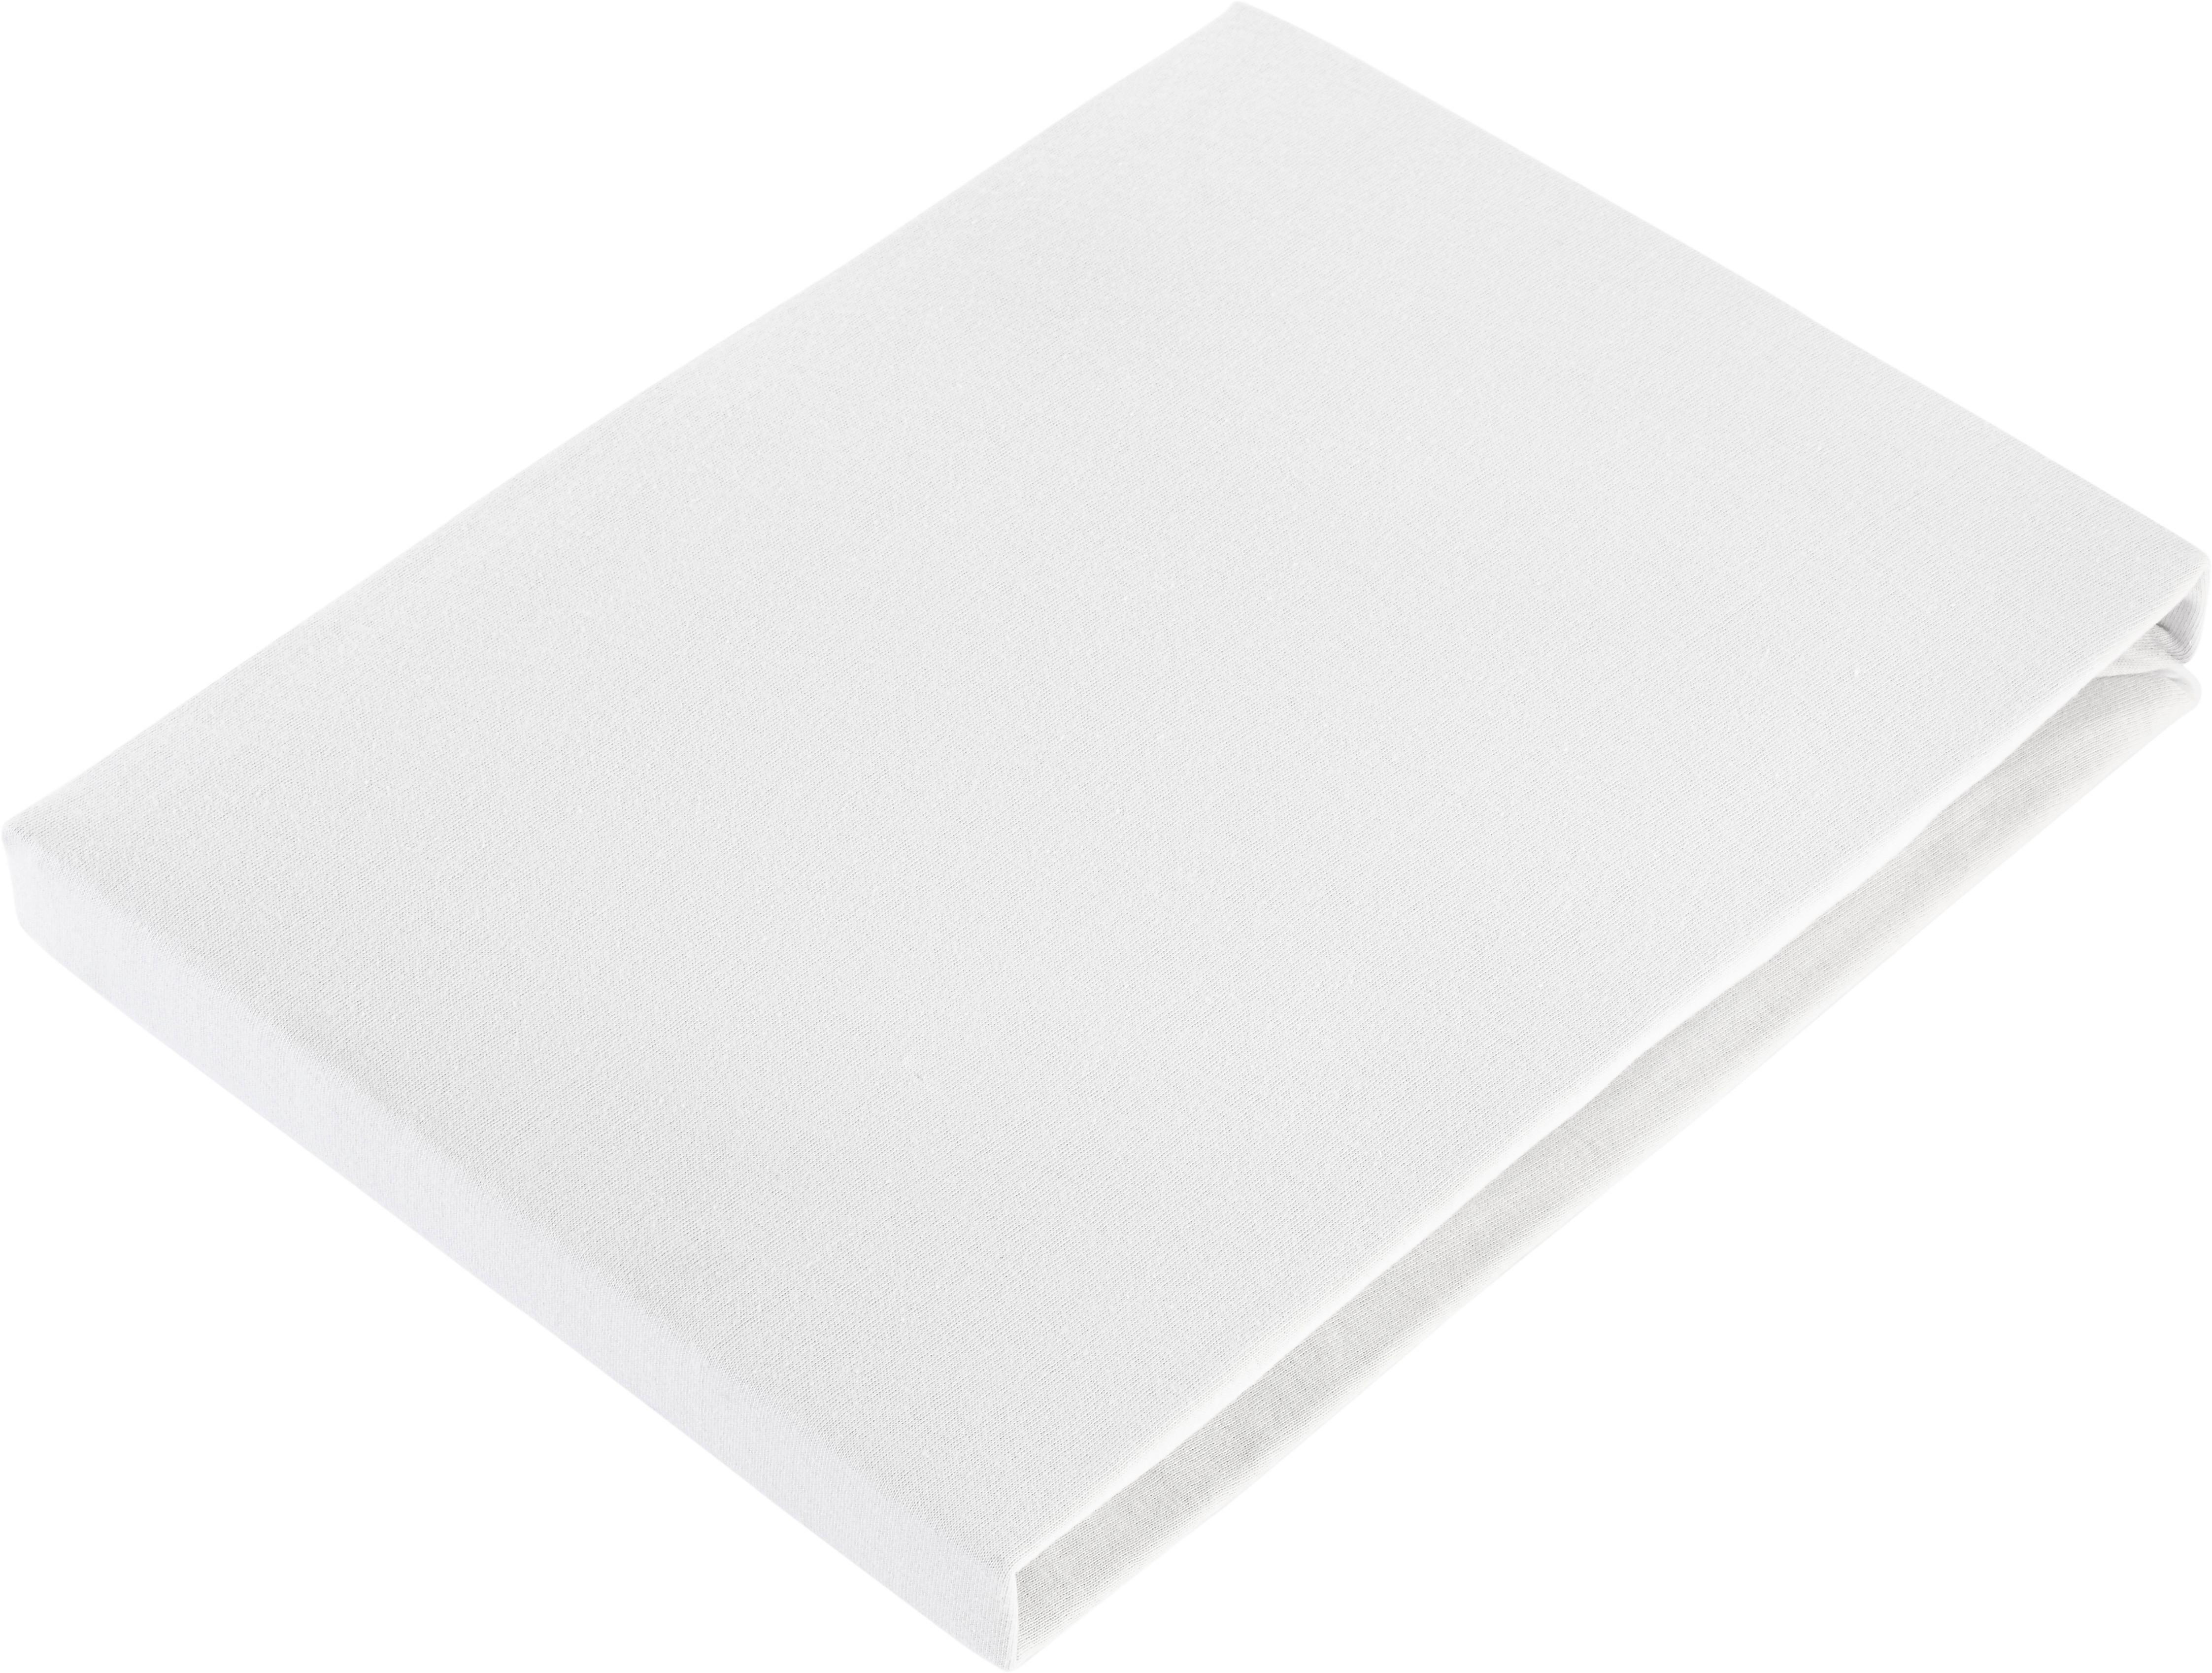 Fixleintuch Basic in Weiss ca. 100x200cm - Weiss, Textil (100/200cm) - Modern Living